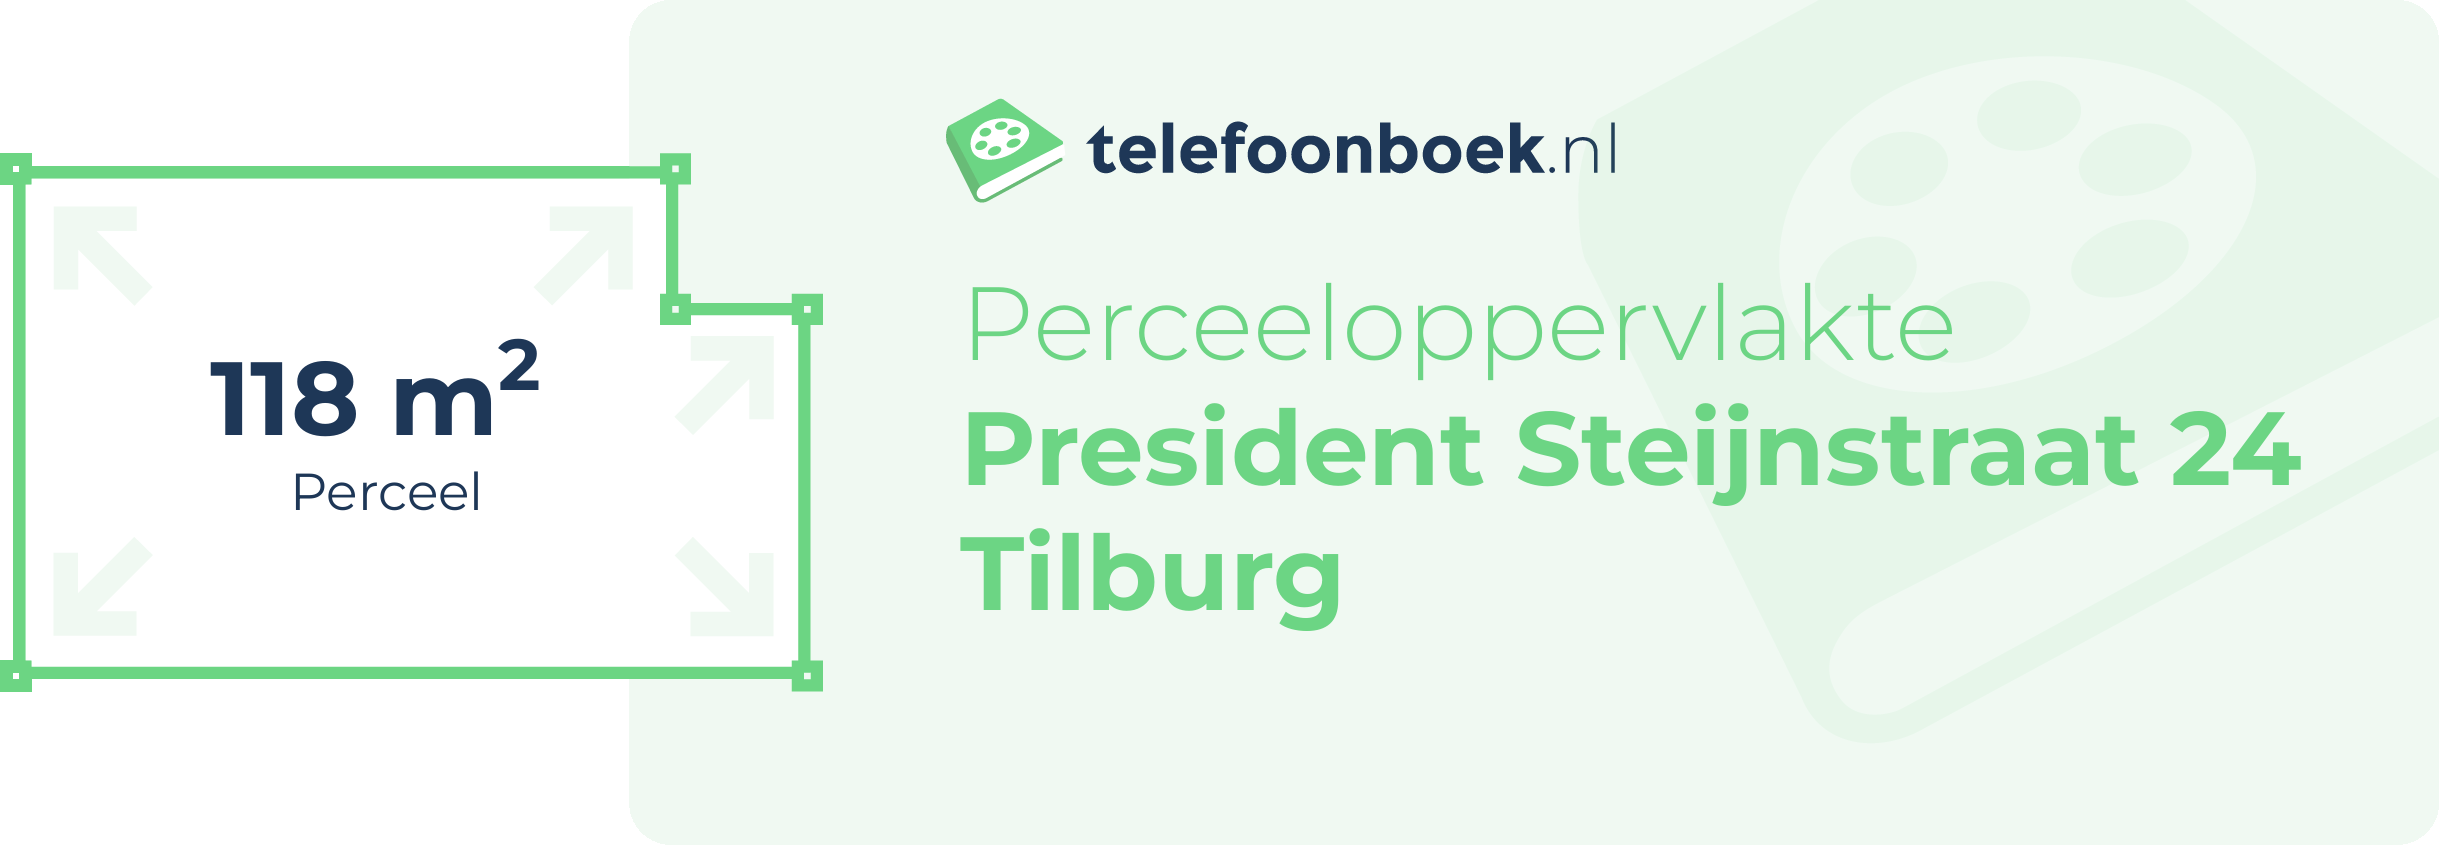 Perceeloppervlakte President Steijnstraat 24 Tilburg